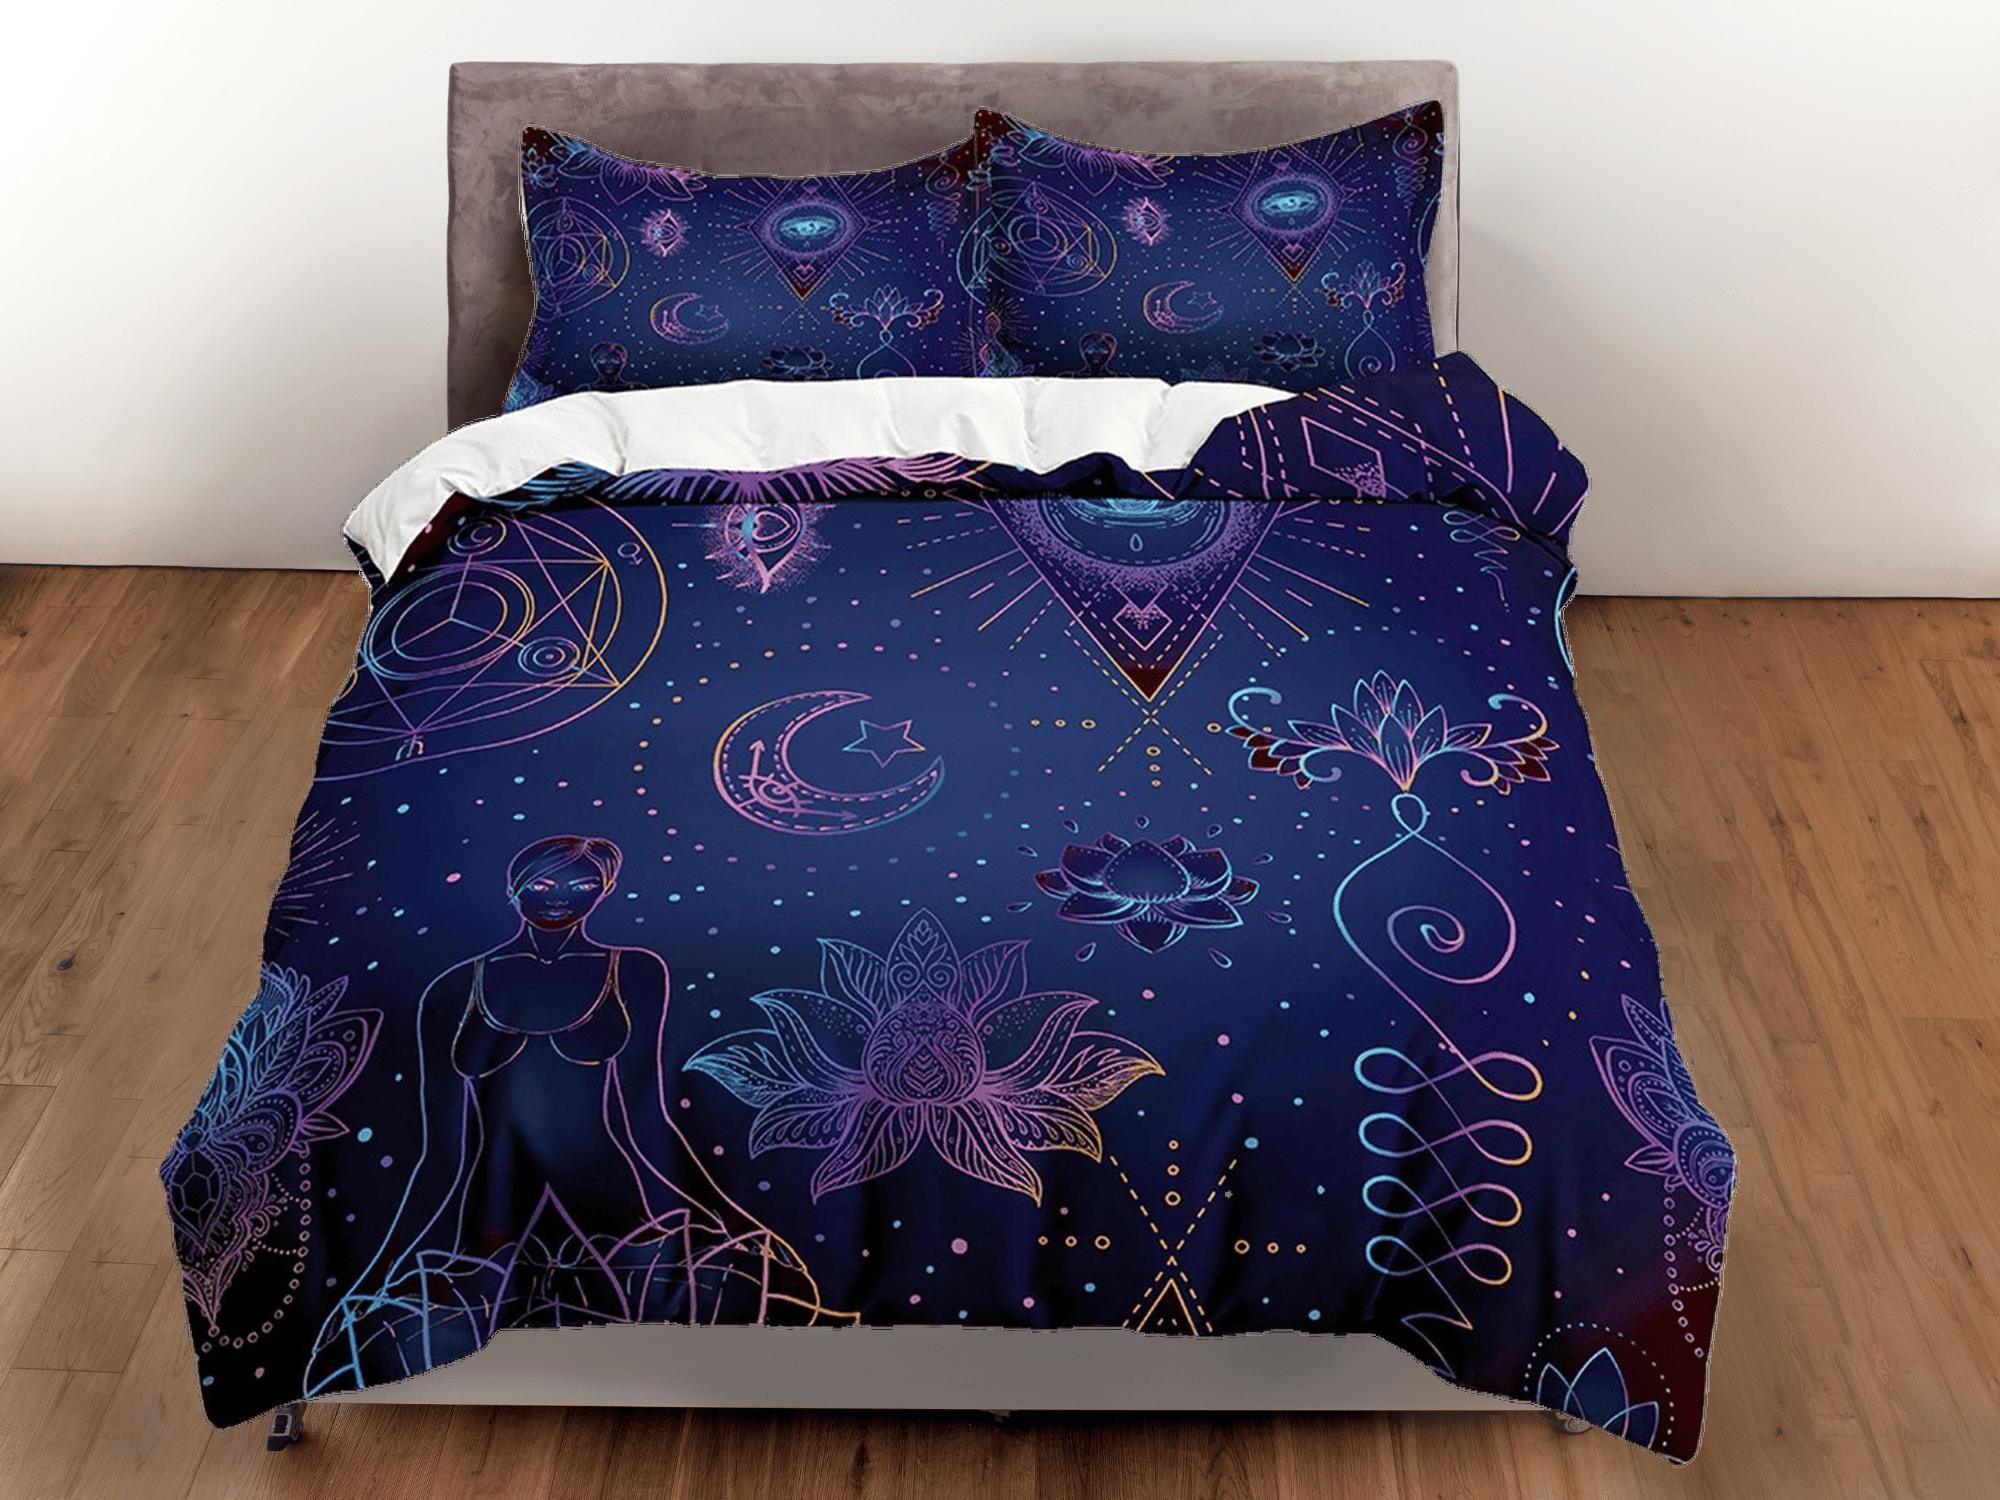 daintyduvet Celestial bedding blue, zen chic, witchy decor, dorm bedding, aesthetic duvet, boho bedding set full king queen, astrology gifts, gothic art